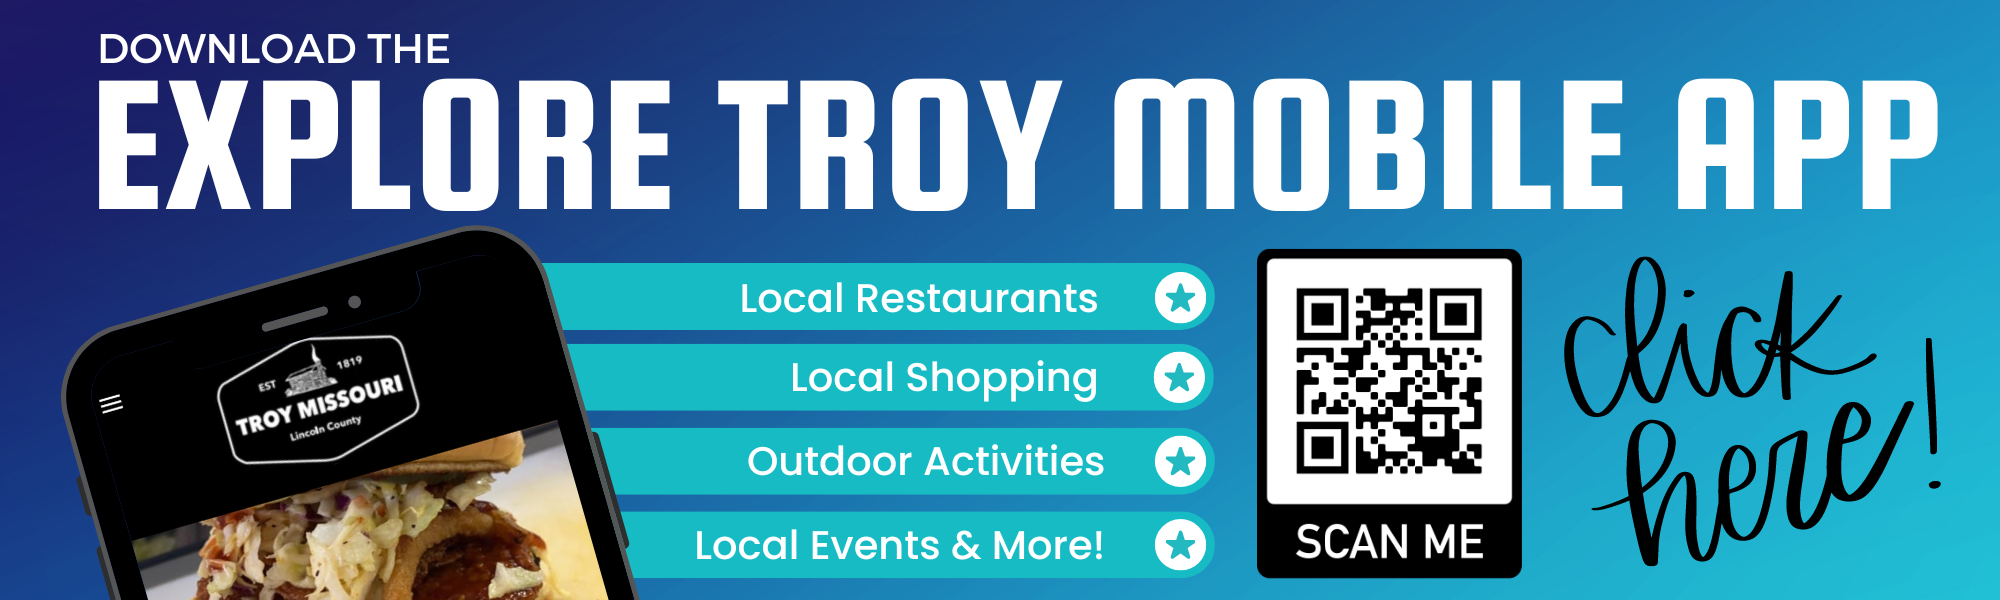 Explore Troy - Website Image (2000 × 600 px)